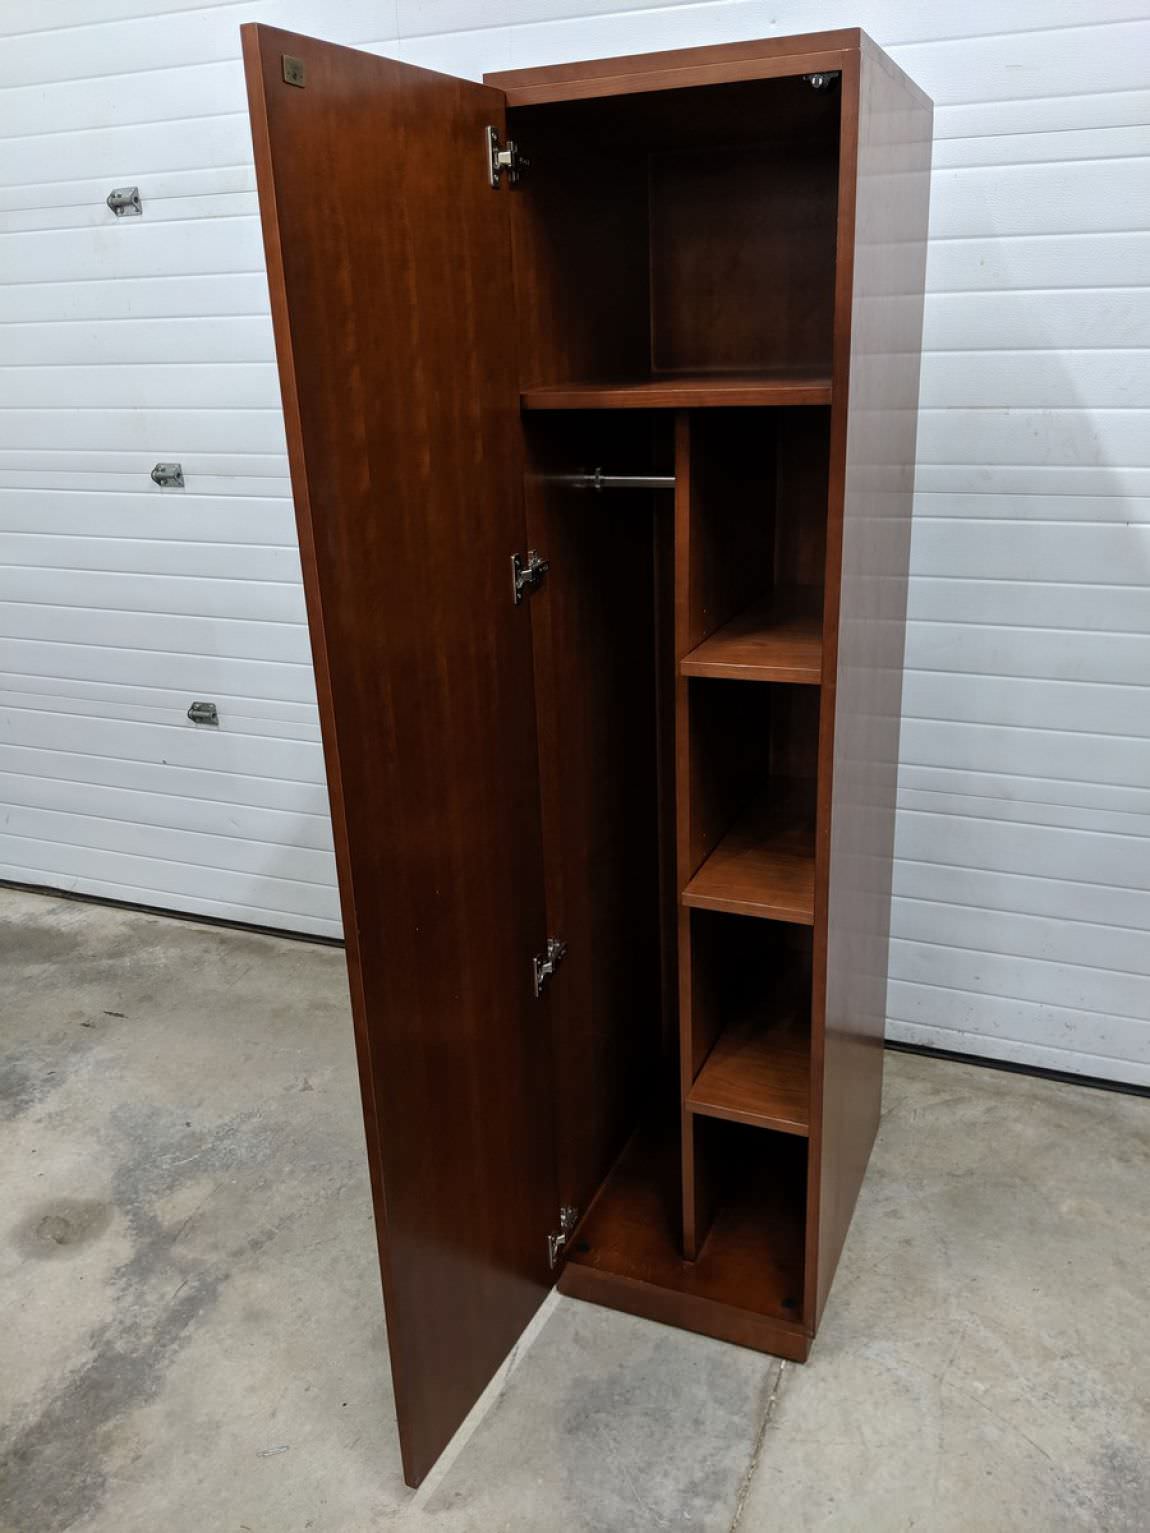 Steelcase Cherry Wardrobe Storage Cabinet – 18 Inch Wide